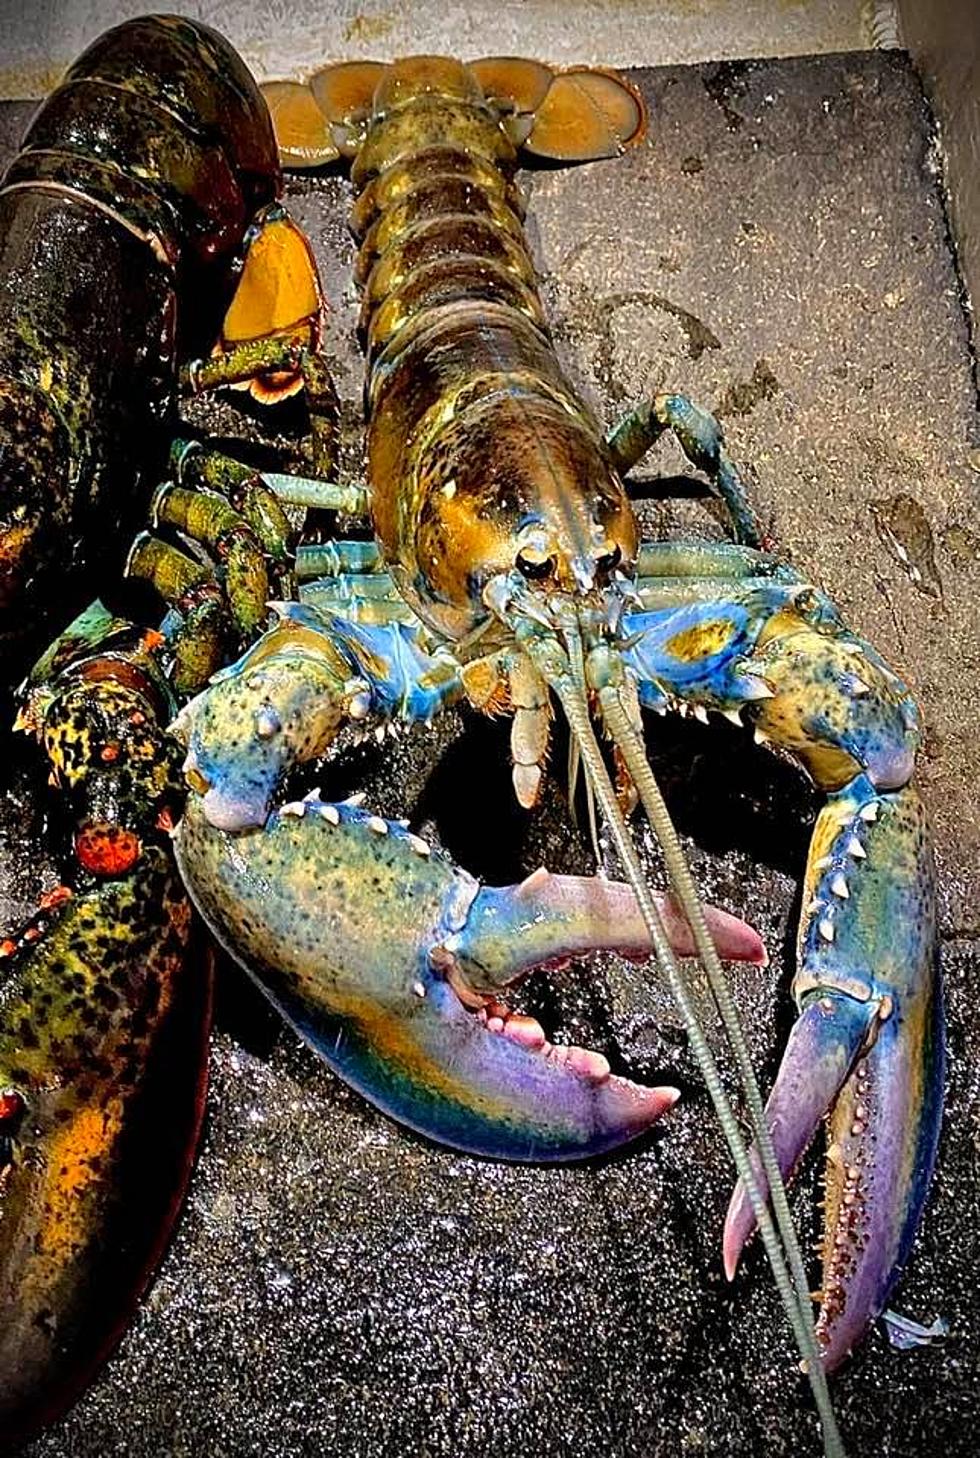 Rainbow Lobster Landed [PHOTOS]